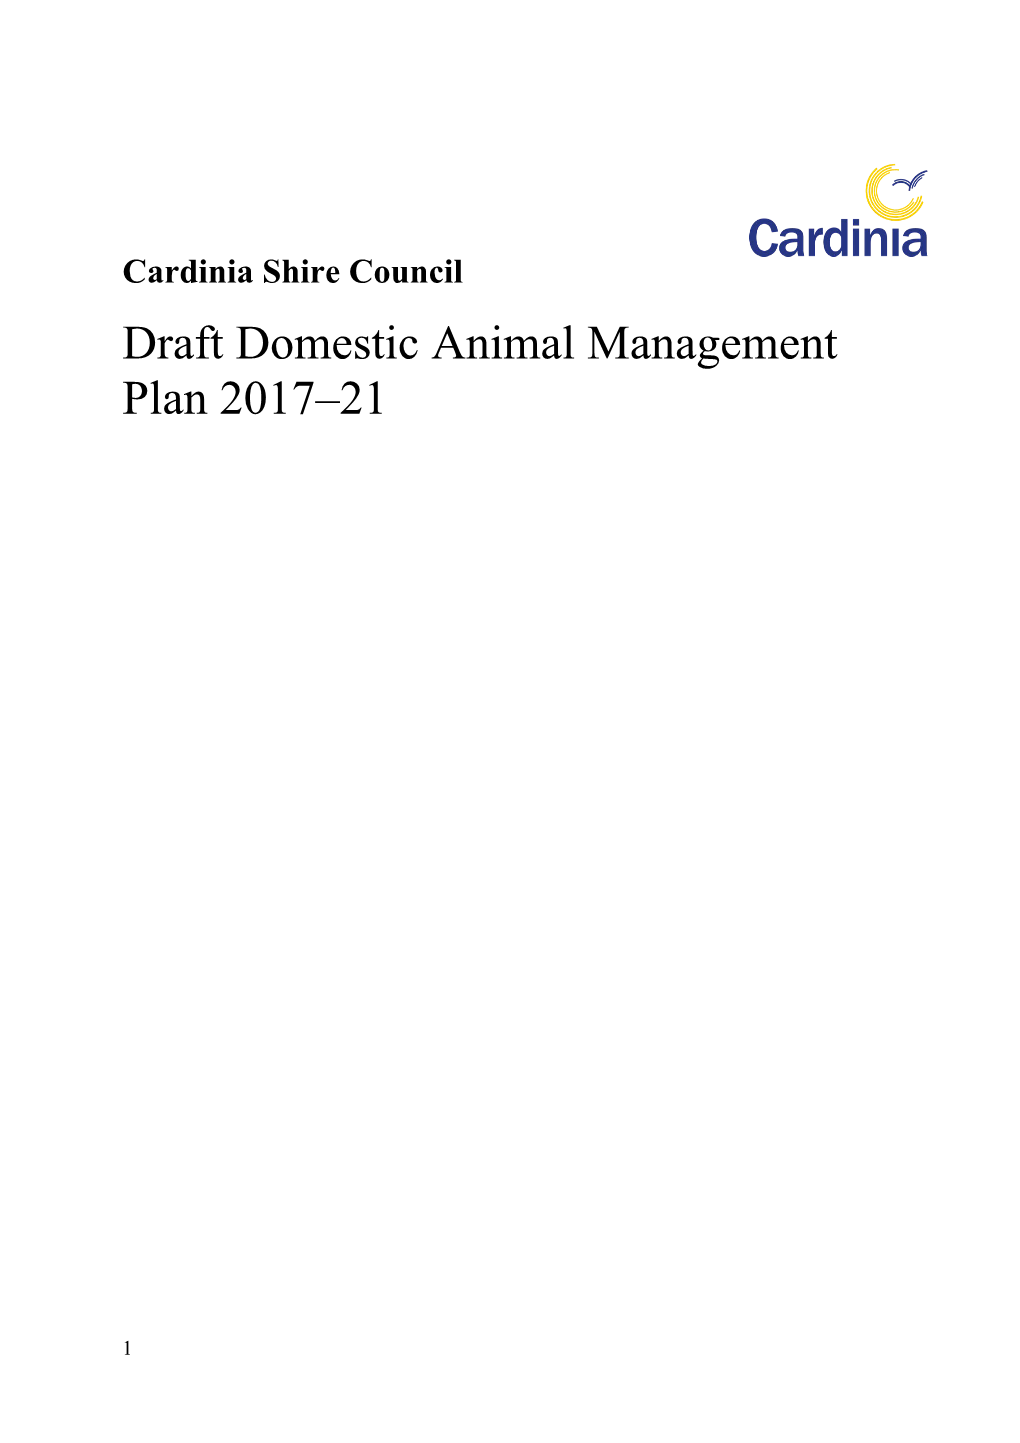 Part 5A Domestic Animal Management Plans